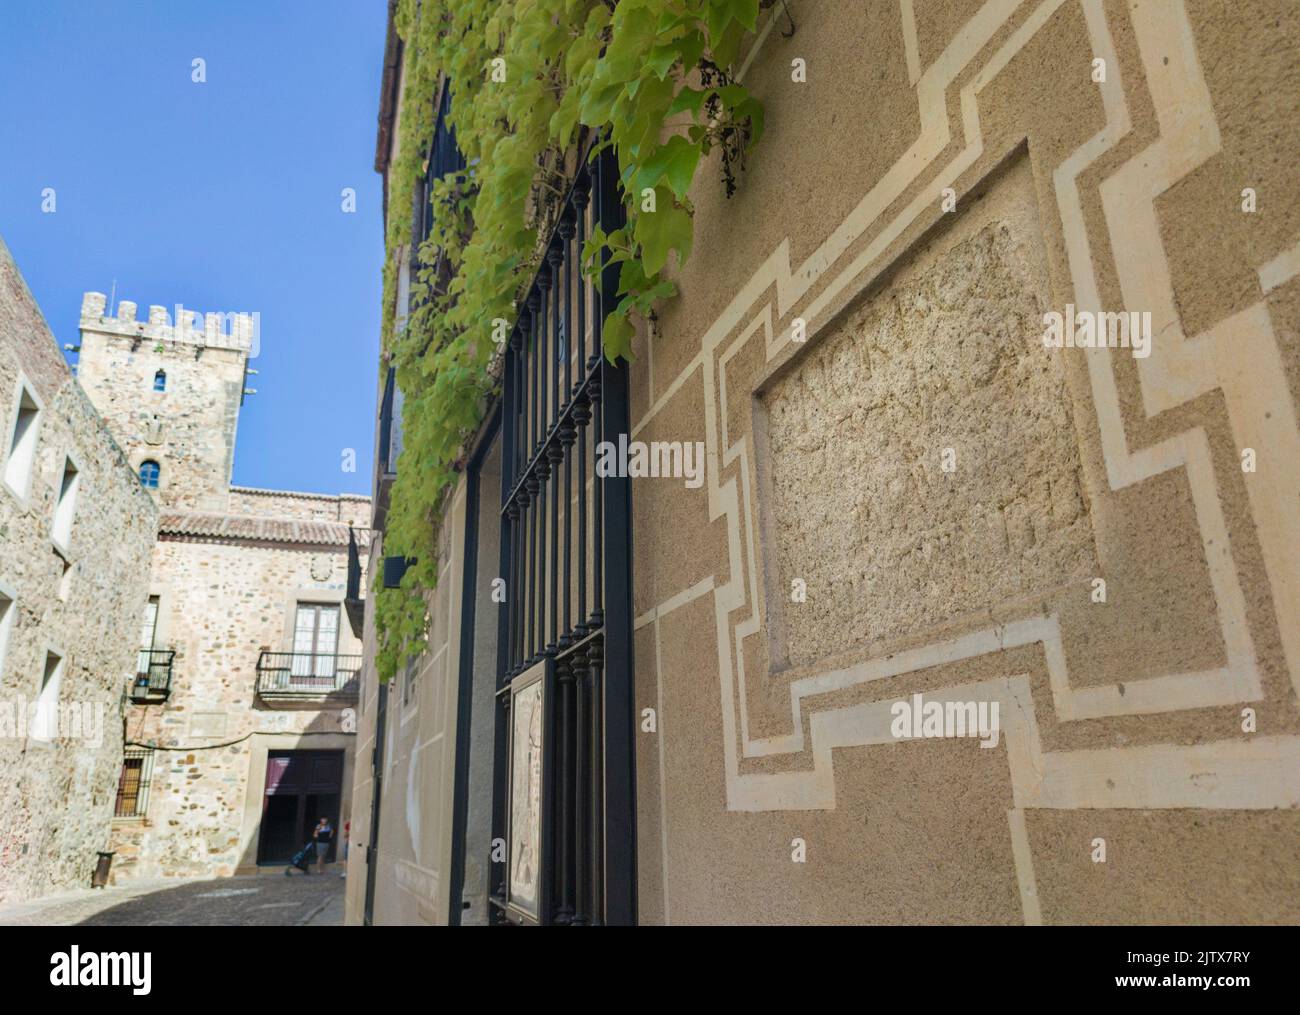 Römischer Grabstein in historischem Viertel Haus gebaut. Römische Überreste noch sichtbar am Sande Palace, Caceres, Extremadura, Spanien. Stockfoto